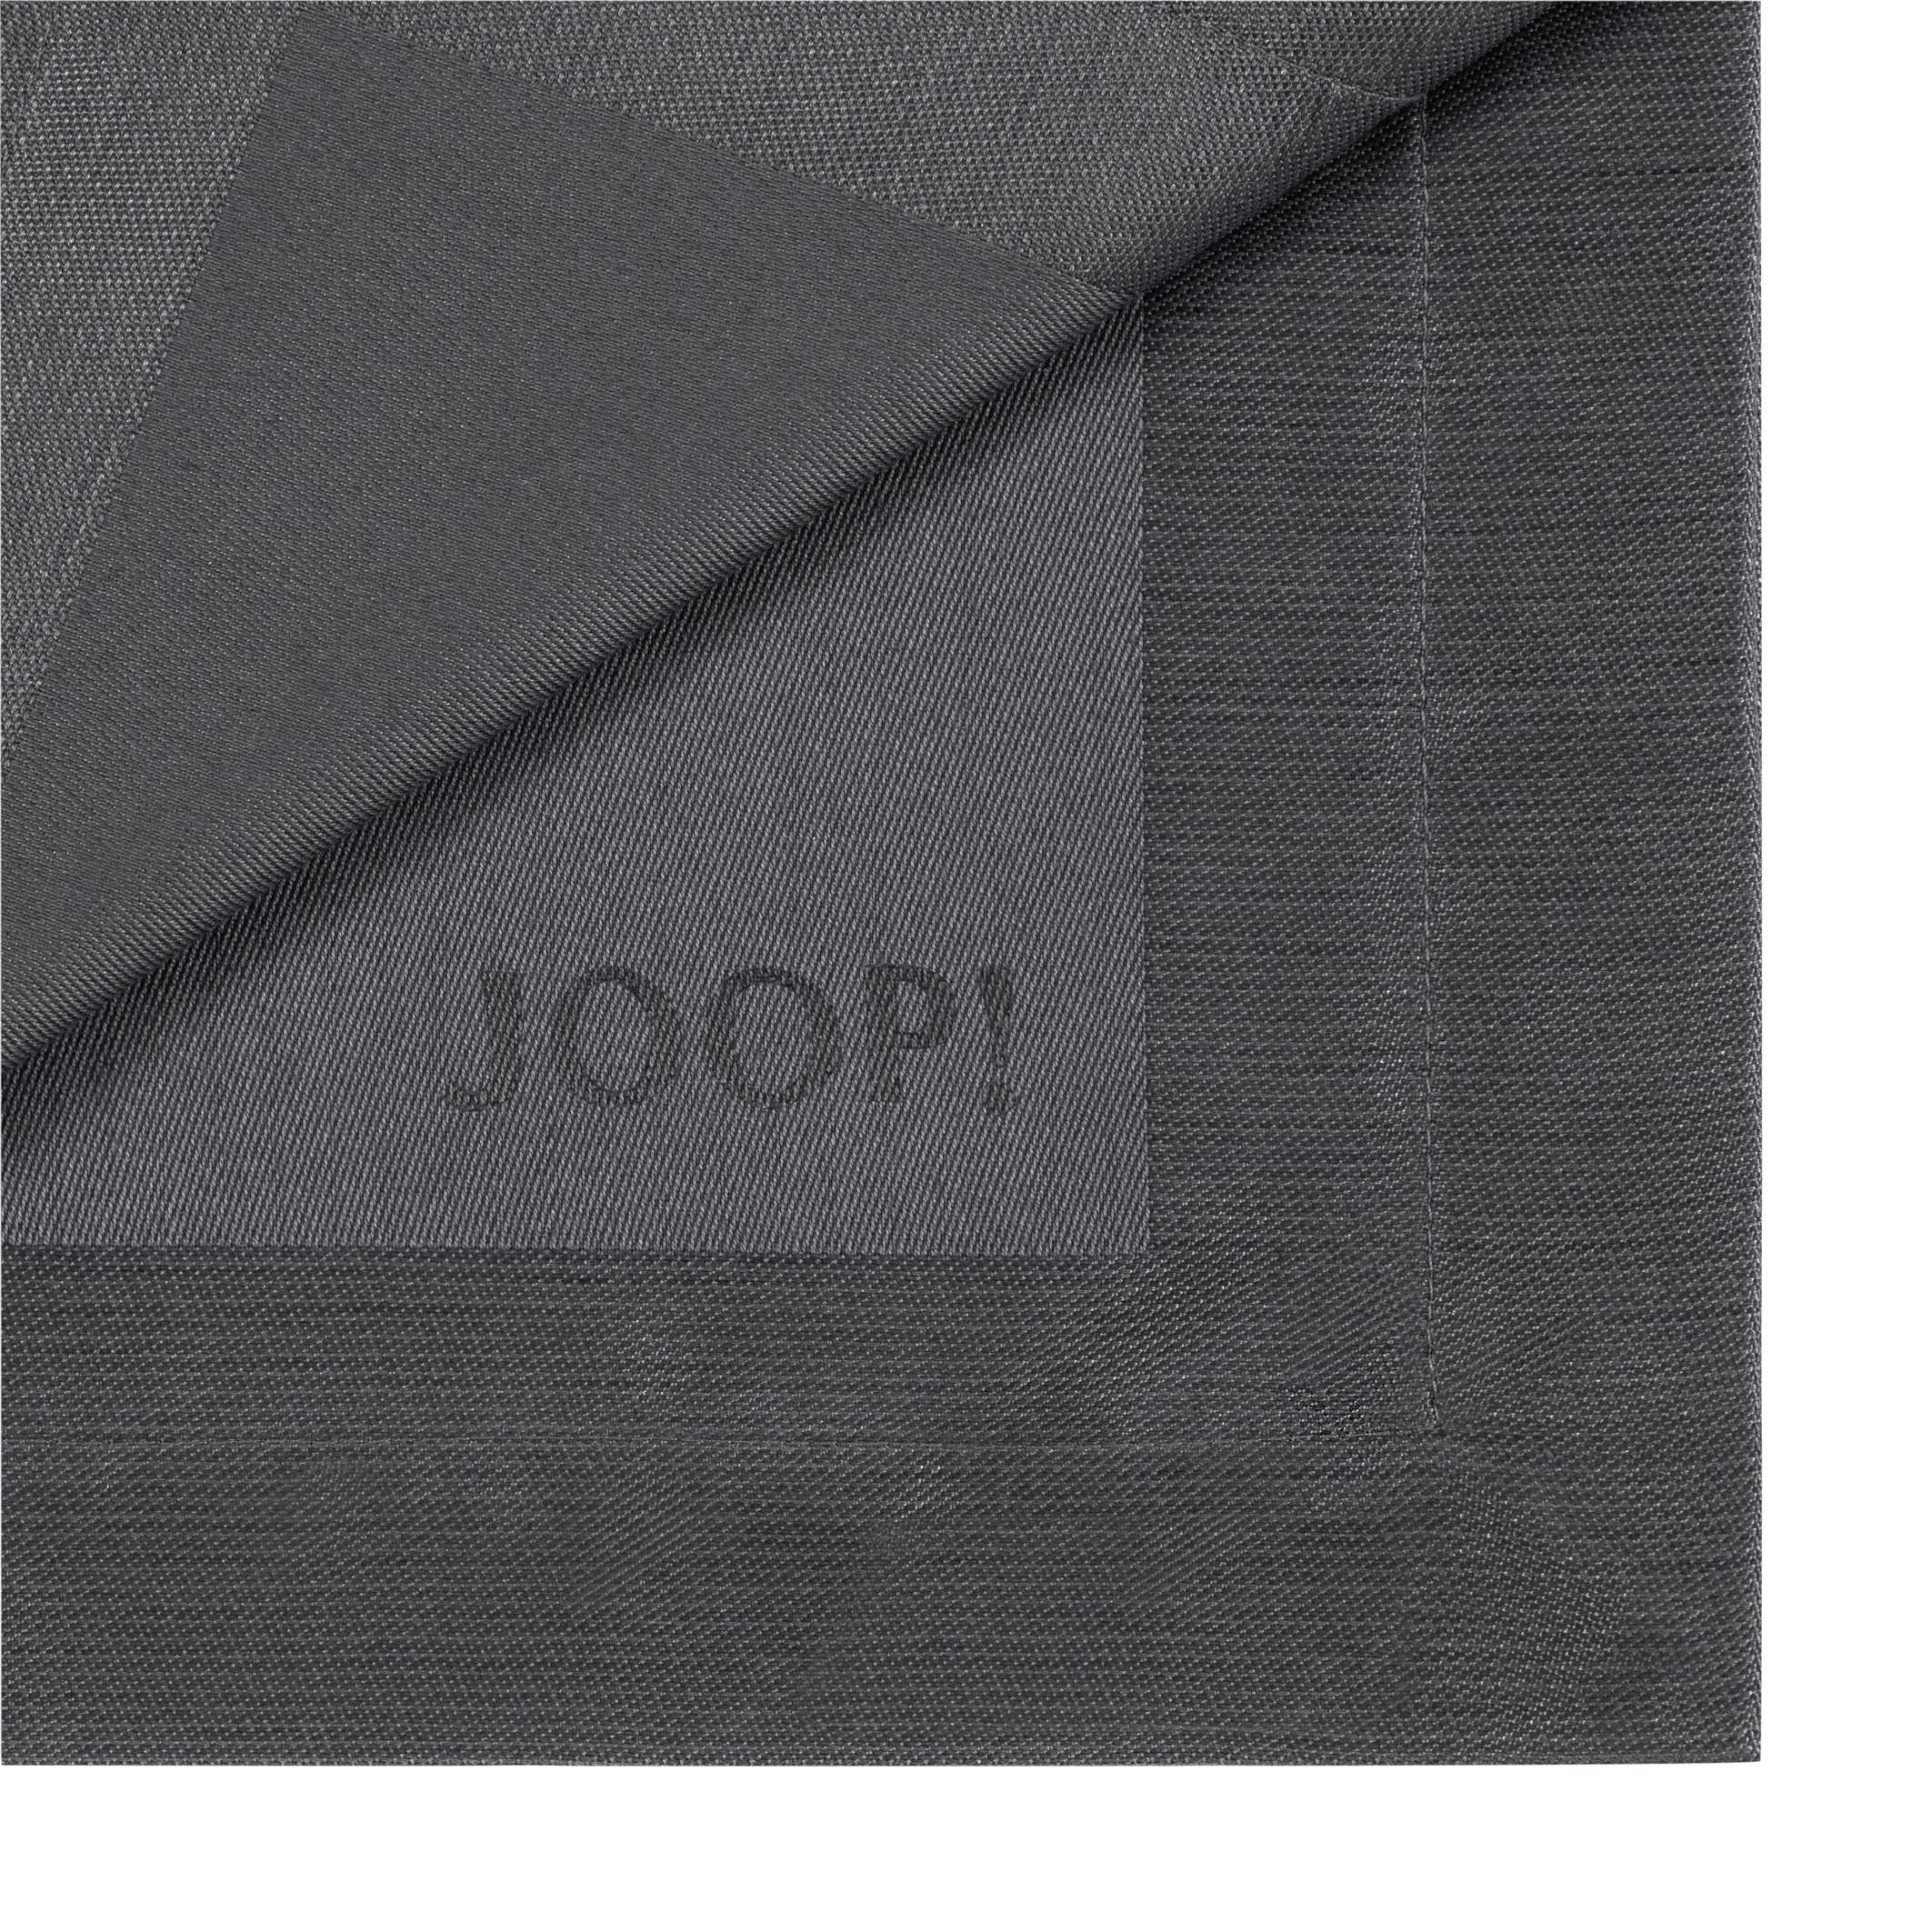 TISCHLÄUFER Signature 50/160 cm  - Graphitfarben, Design, Textil (50/160cm) - Joop!